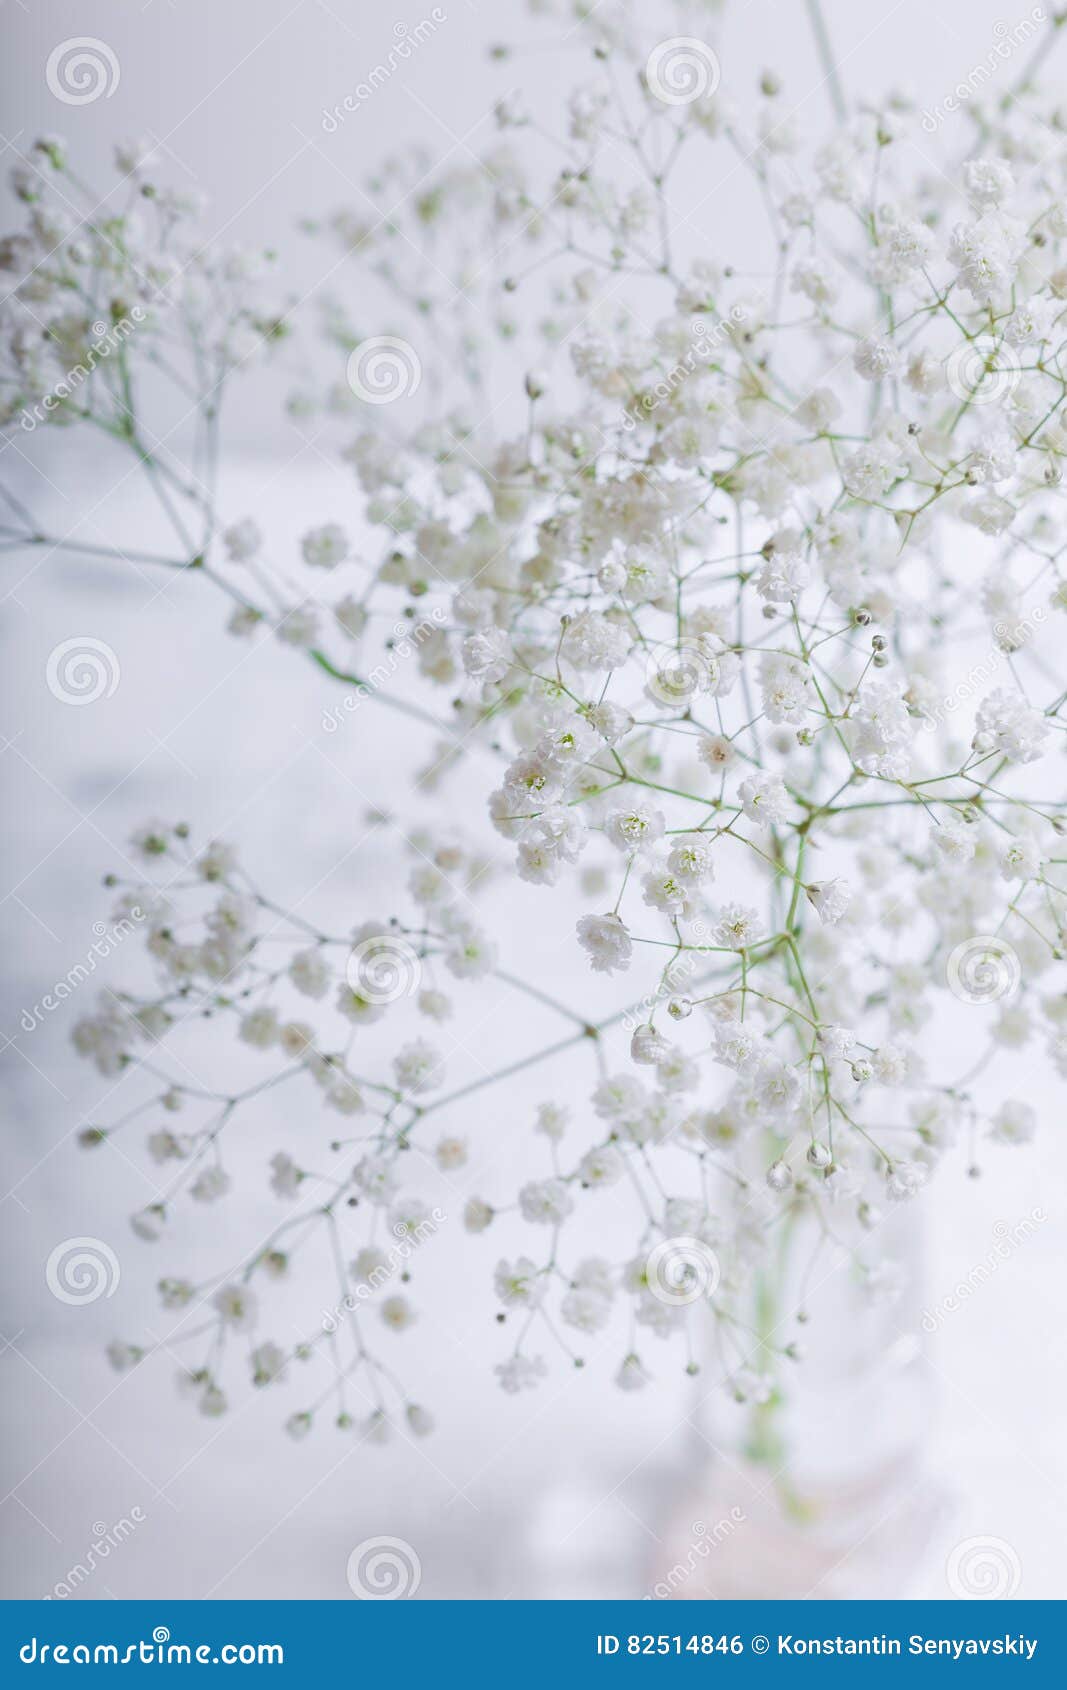 Weisse Blumen Von Gypsophila Auf Einem Weissen Hintergrund Stockfoto Bild Von Fotographie Betrieb 82514846